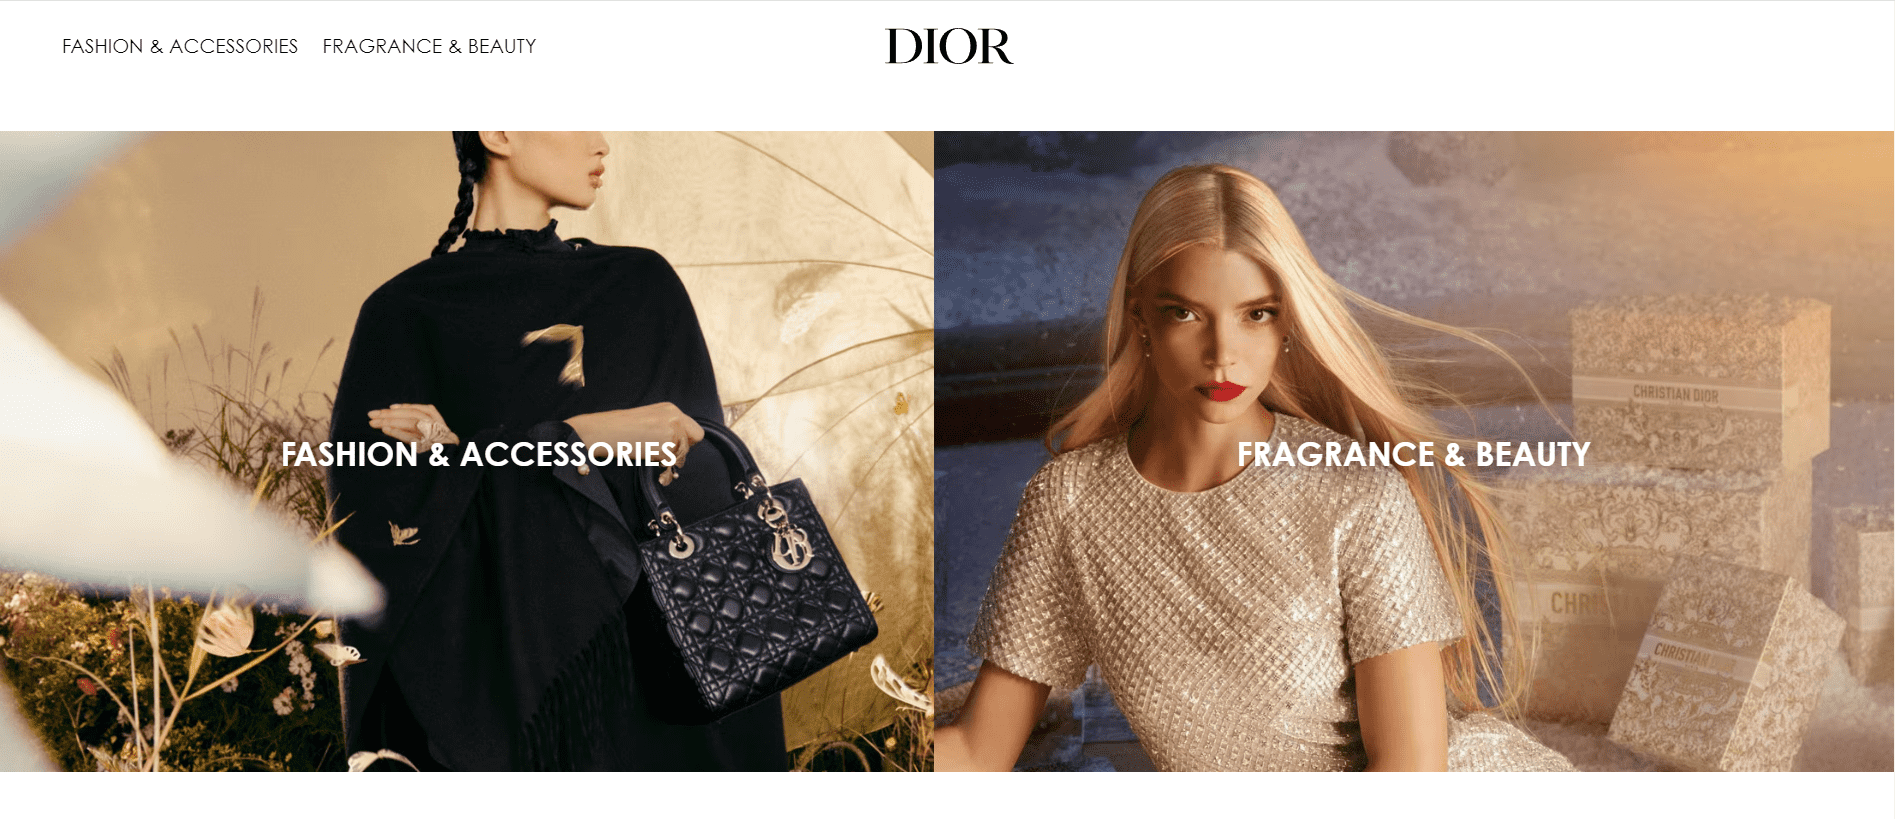 Dior website homepage